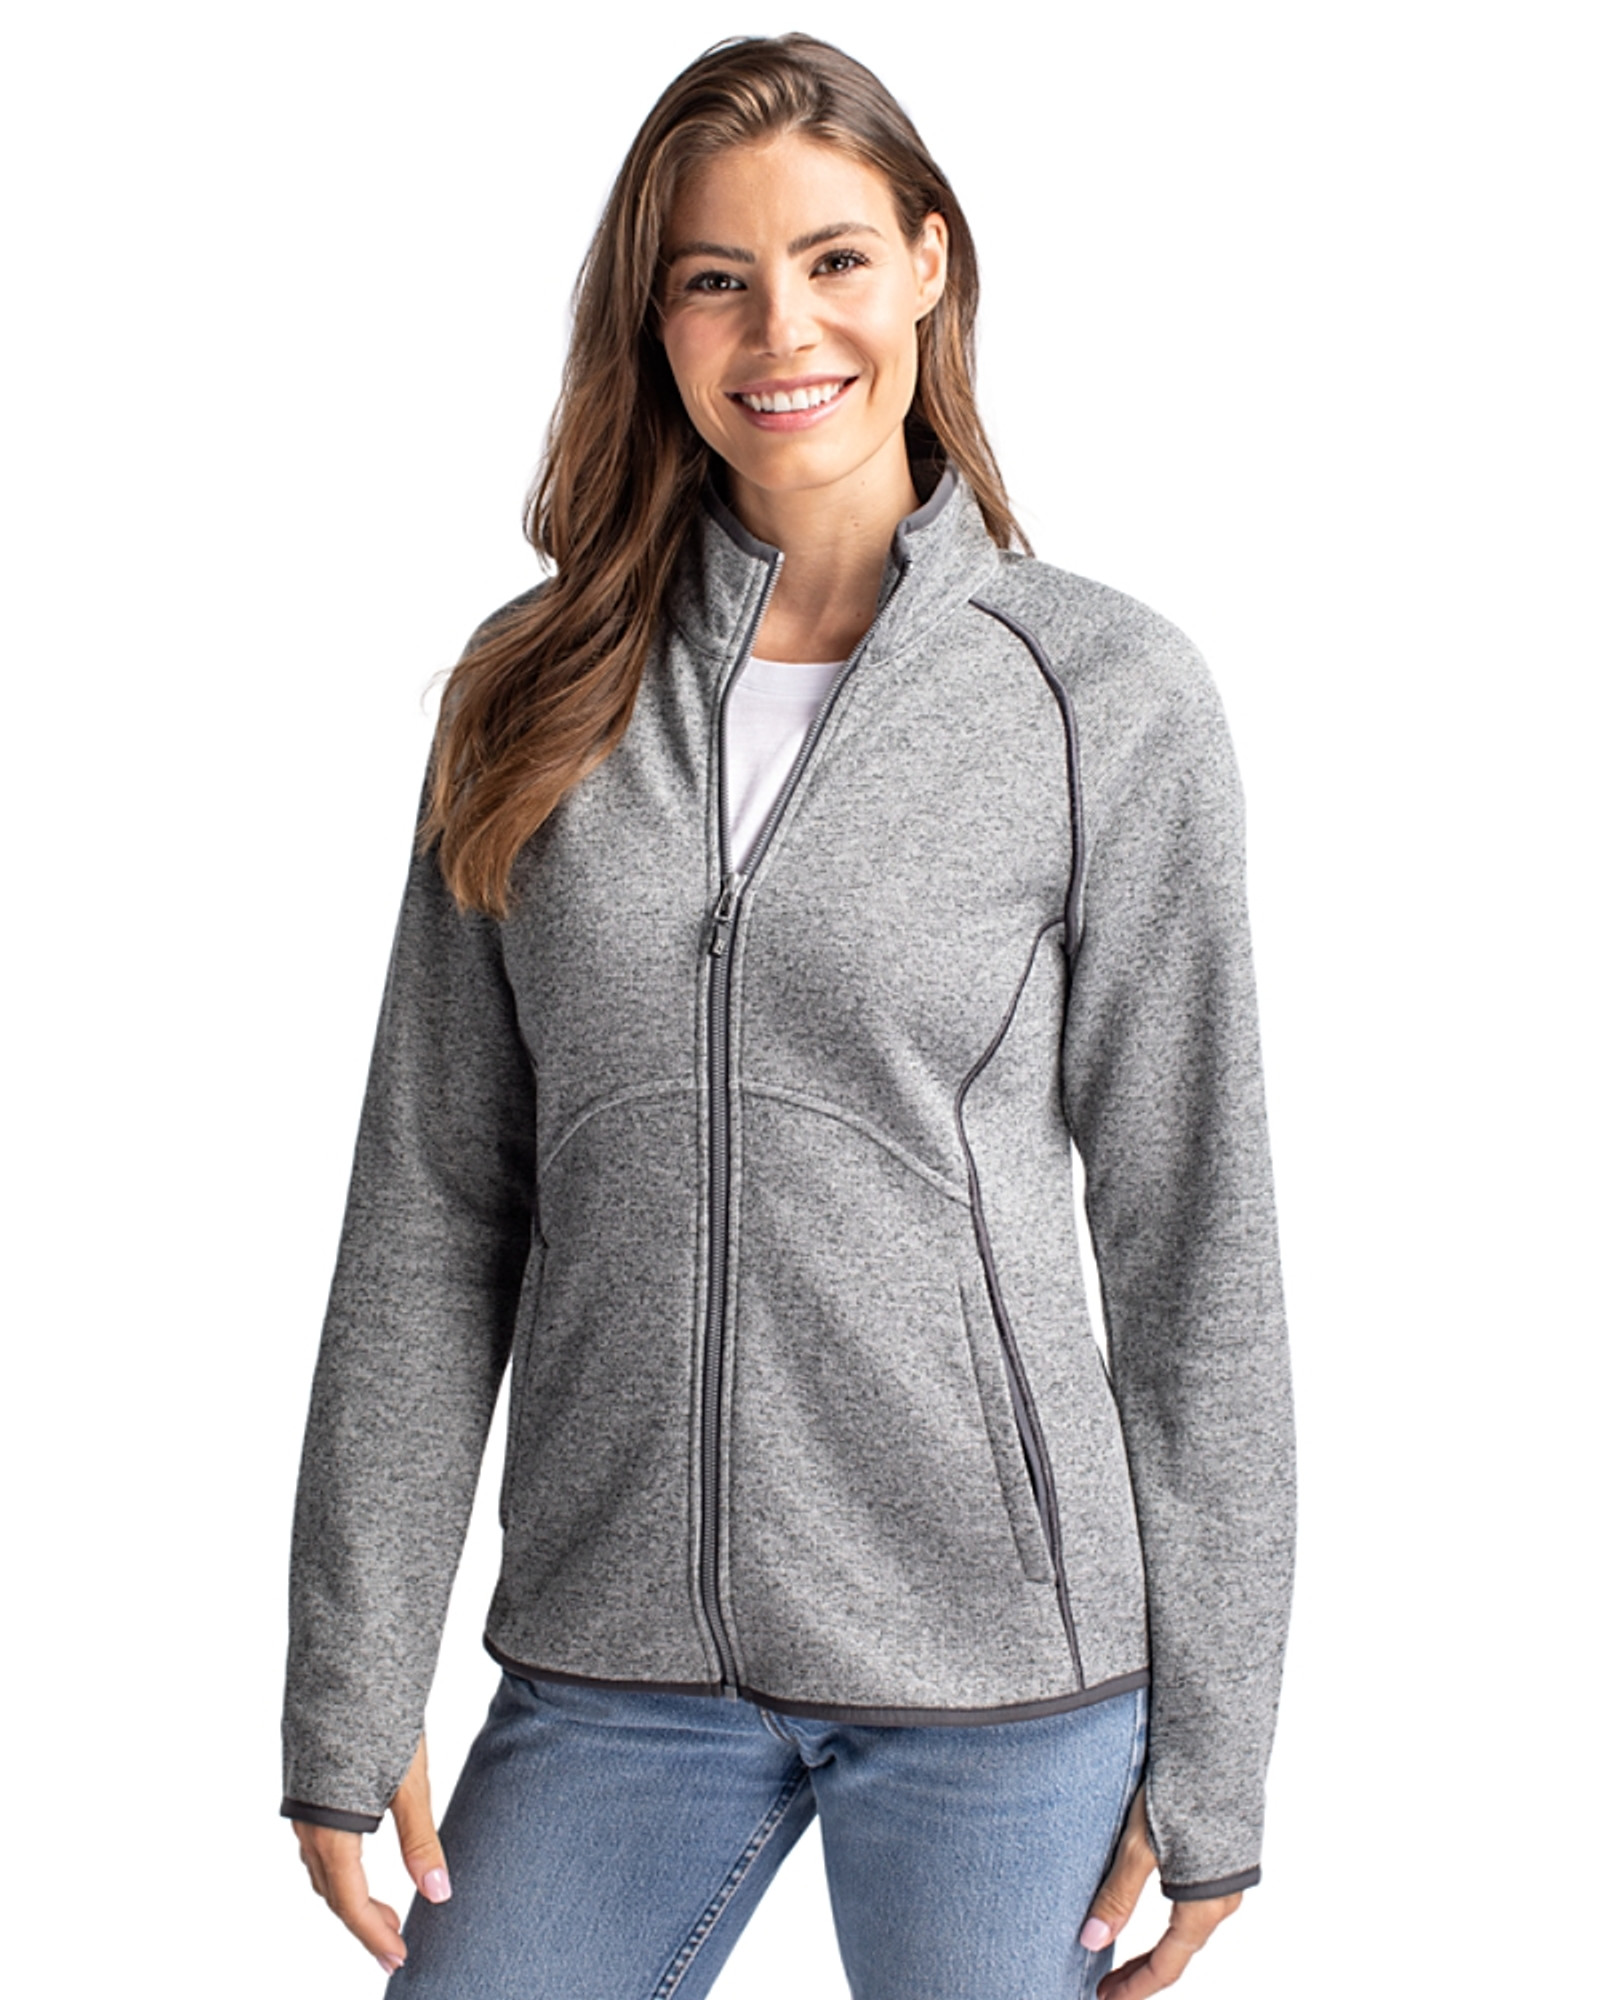 Cutter & Buck Mainsail Sweater-Knit Womens Full Zip Jacket